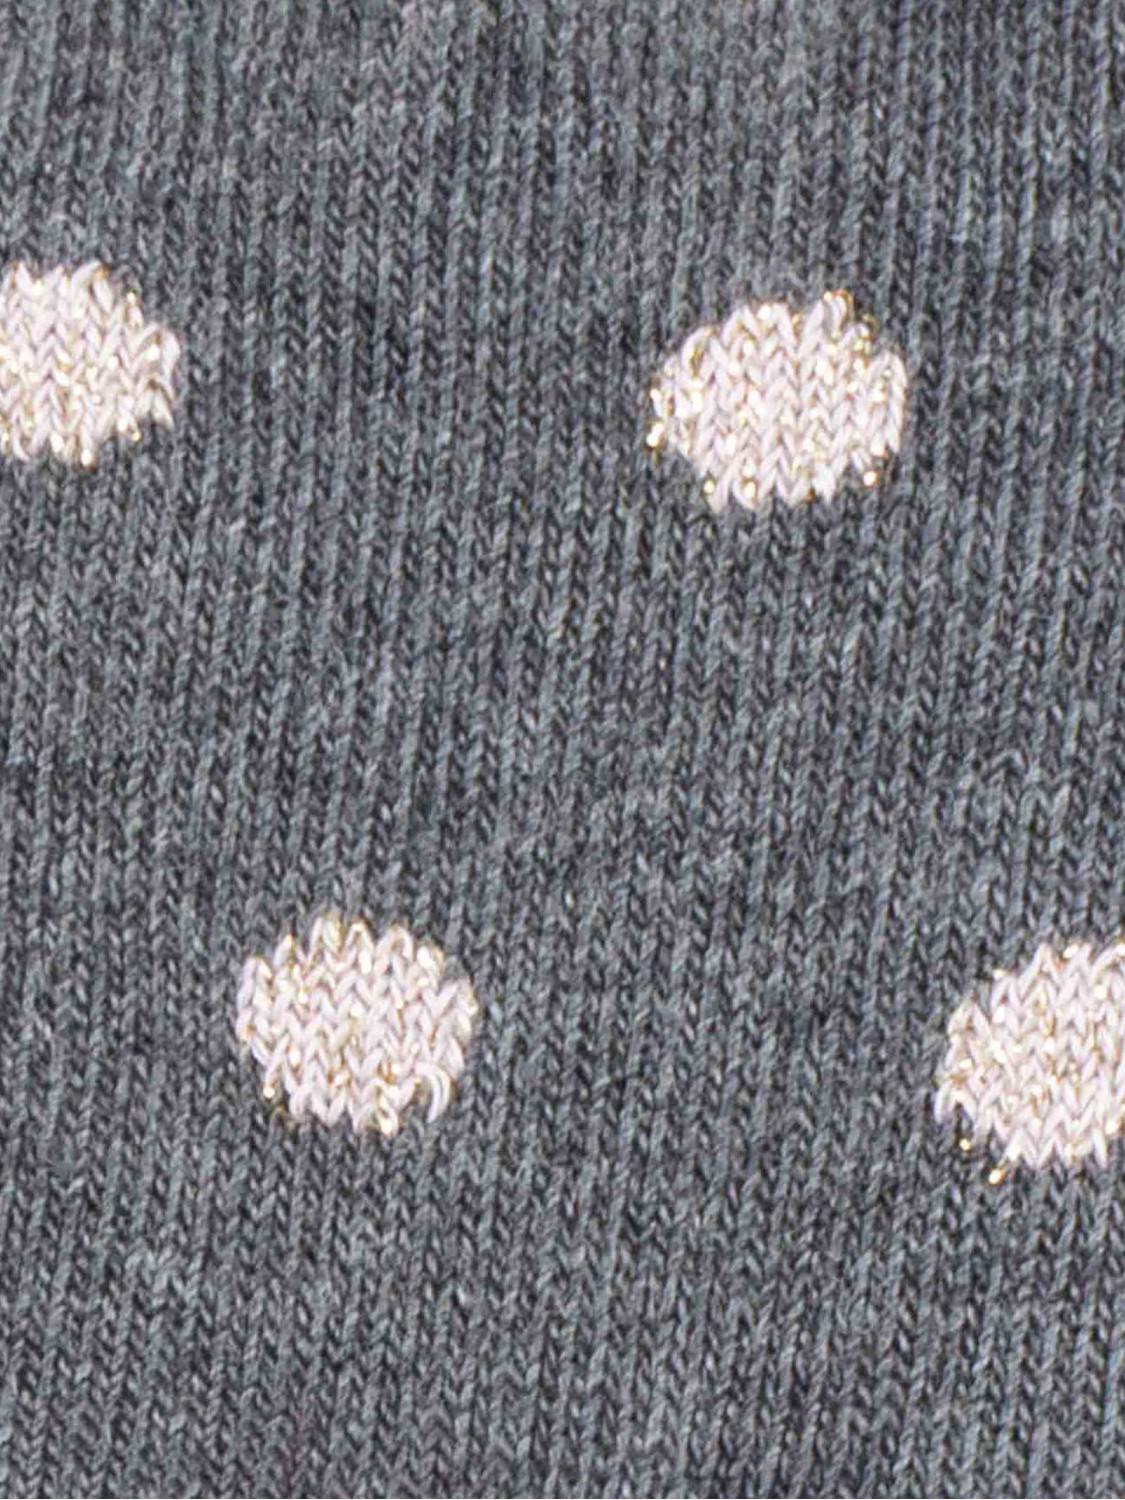 Kurze Polka-Dot-Socken für Mädchen mit Lurex-Bordüre